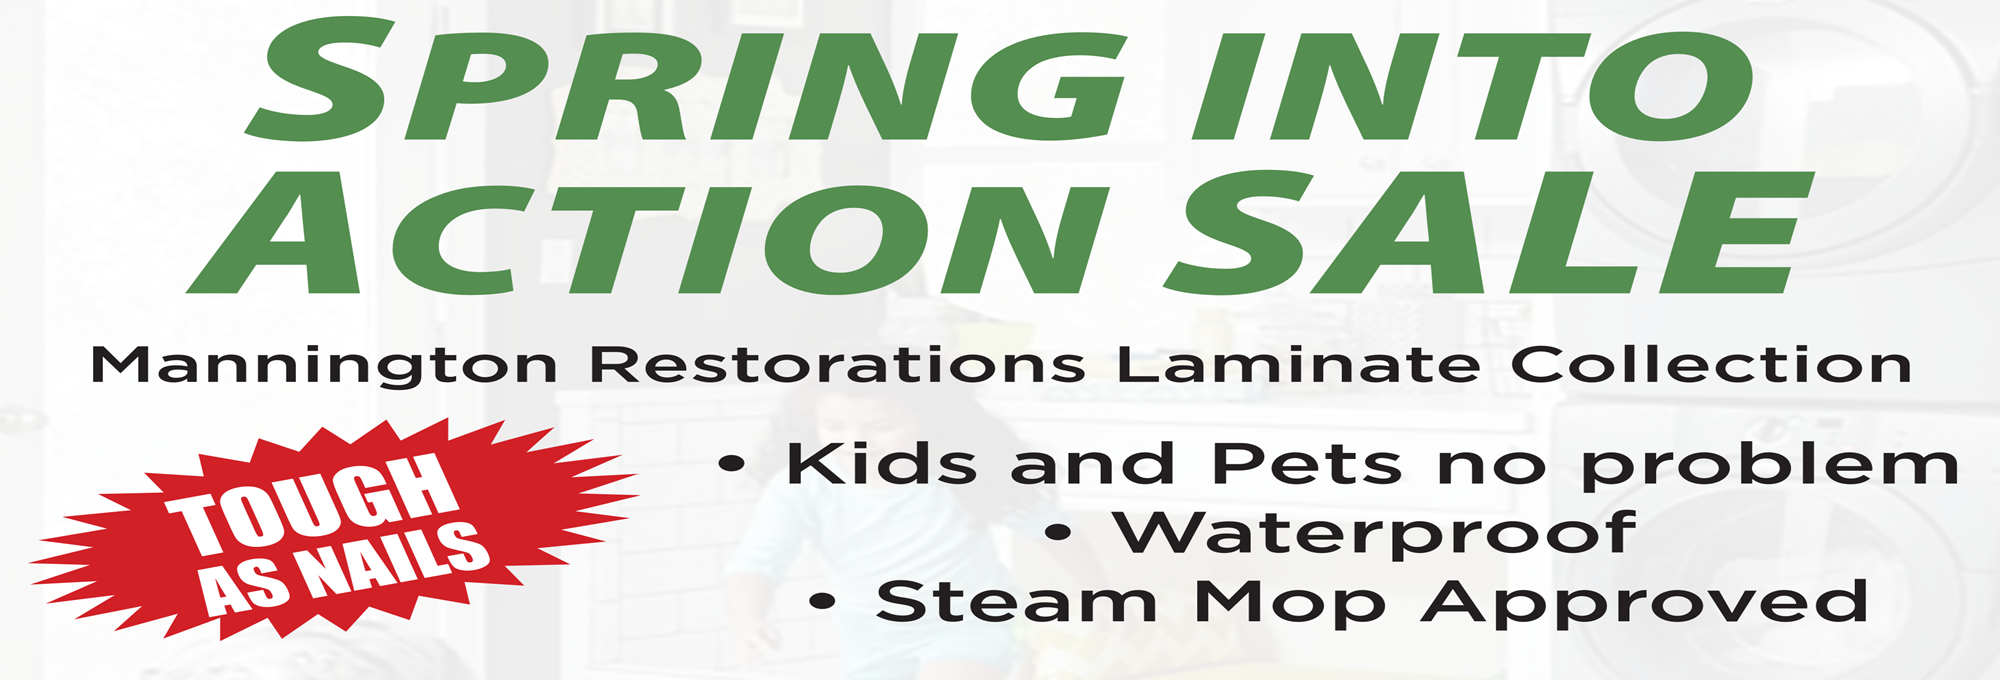 Mannington Restorations banner image